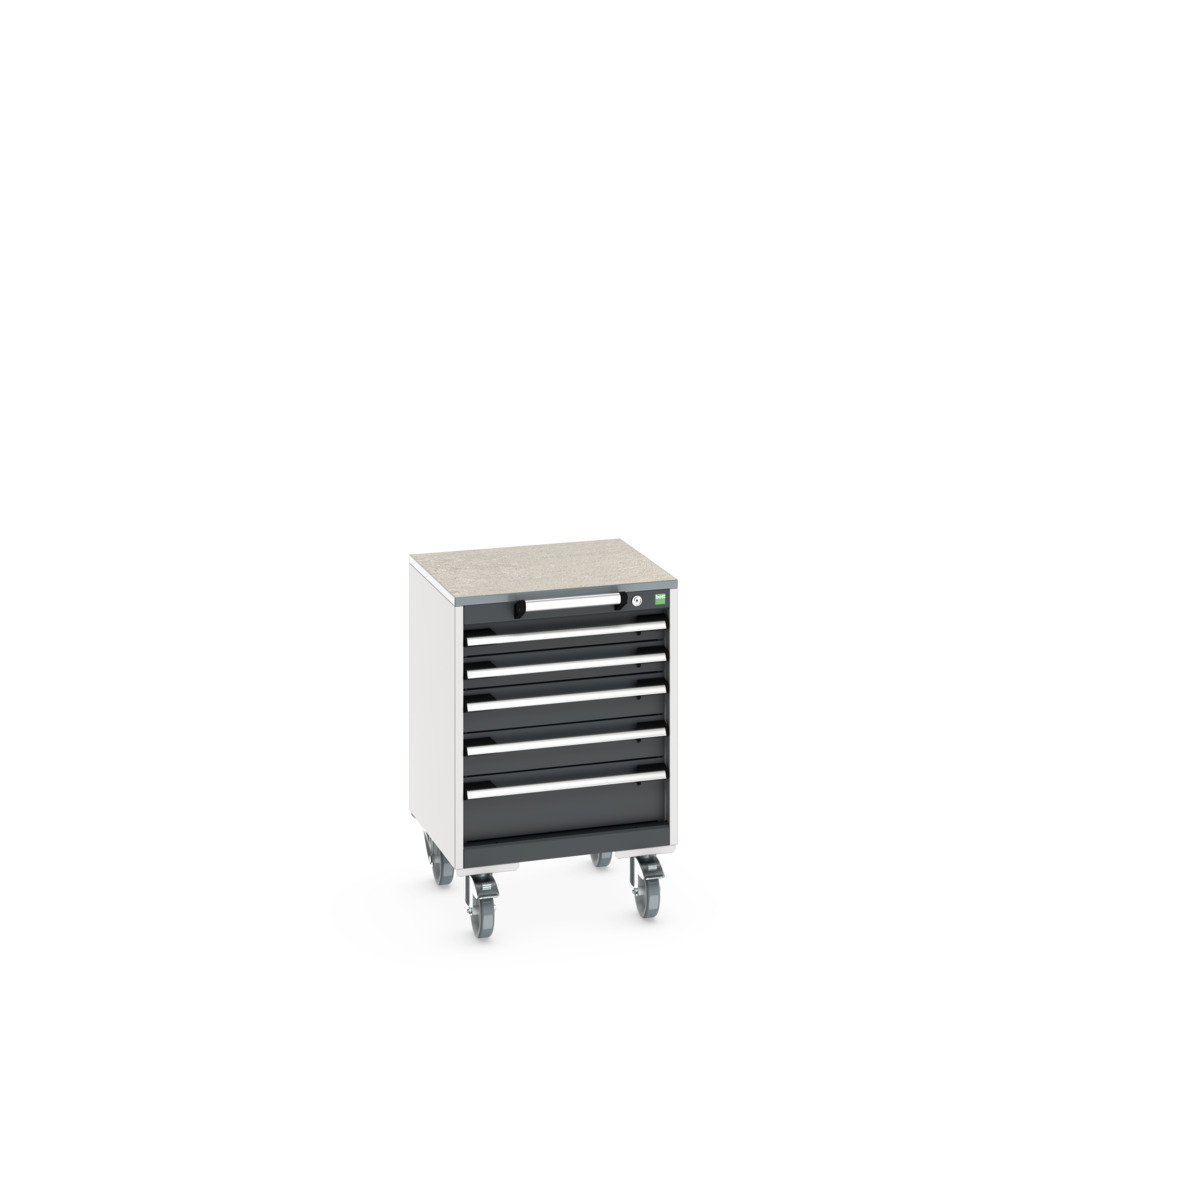 40402136. - cubio mobile cabinet